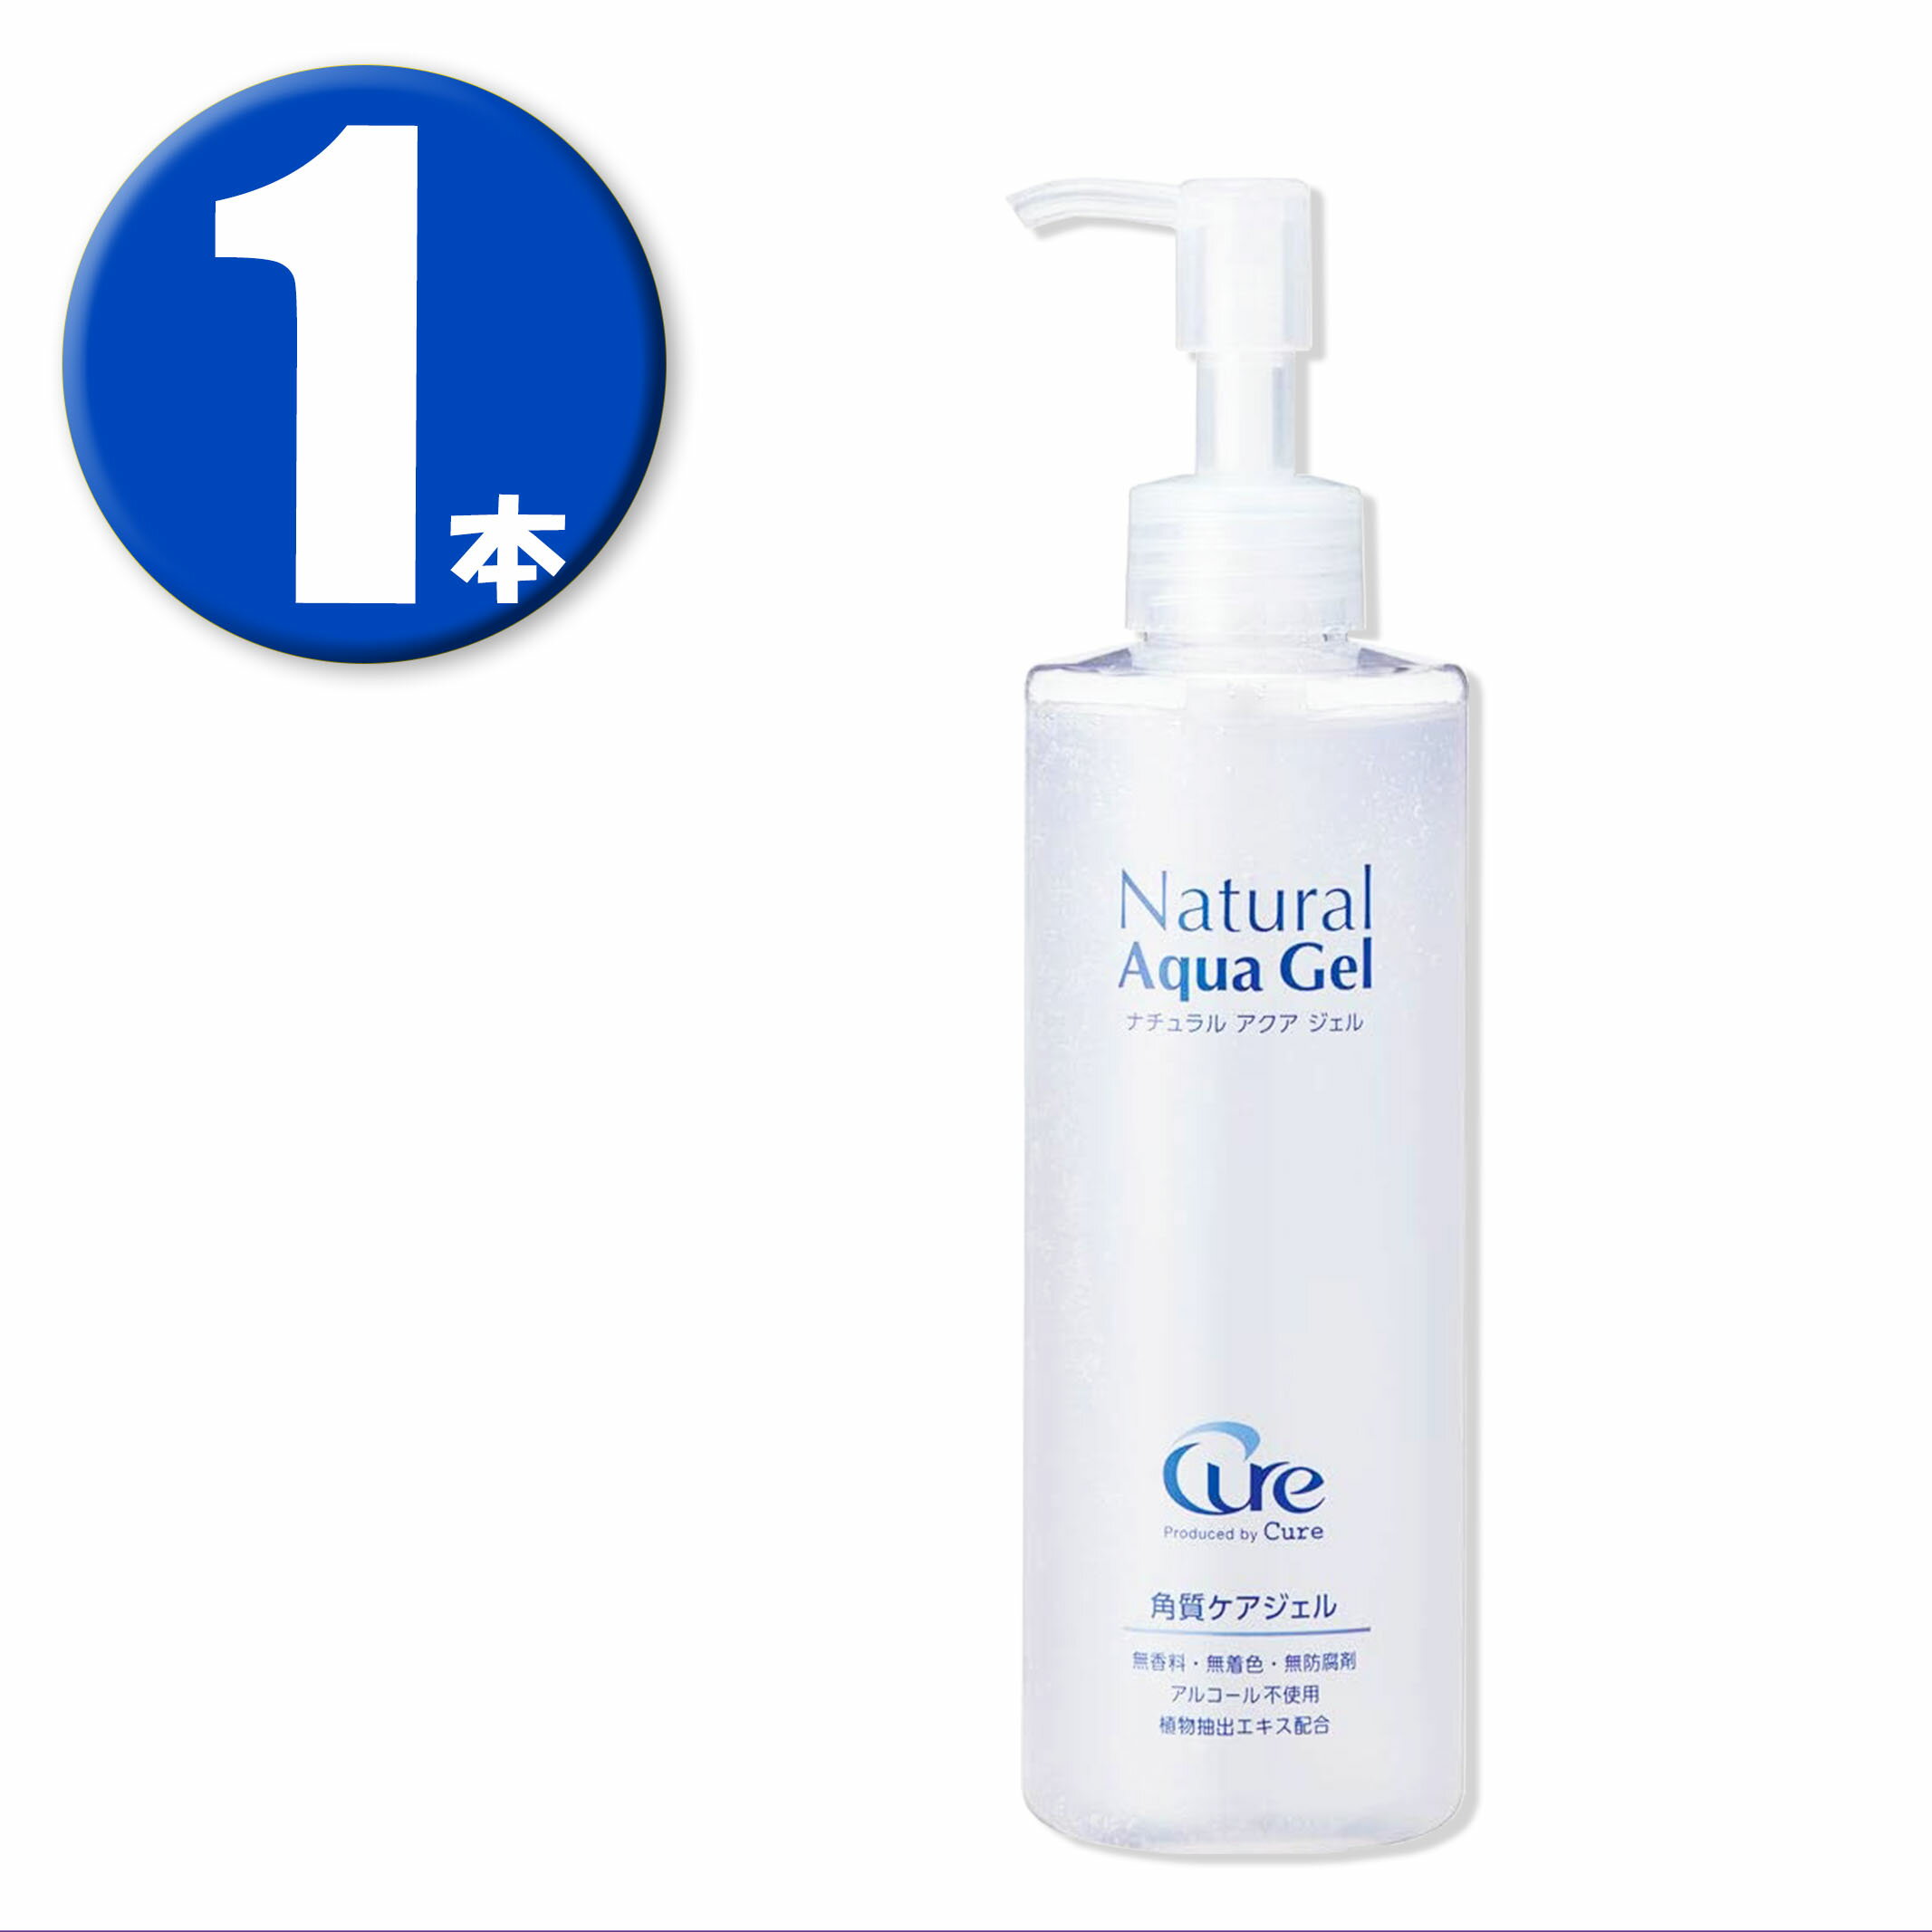 (1本)キュア ナチュラルアクアジェル 250g Product by Cure Natural Aqua Gel